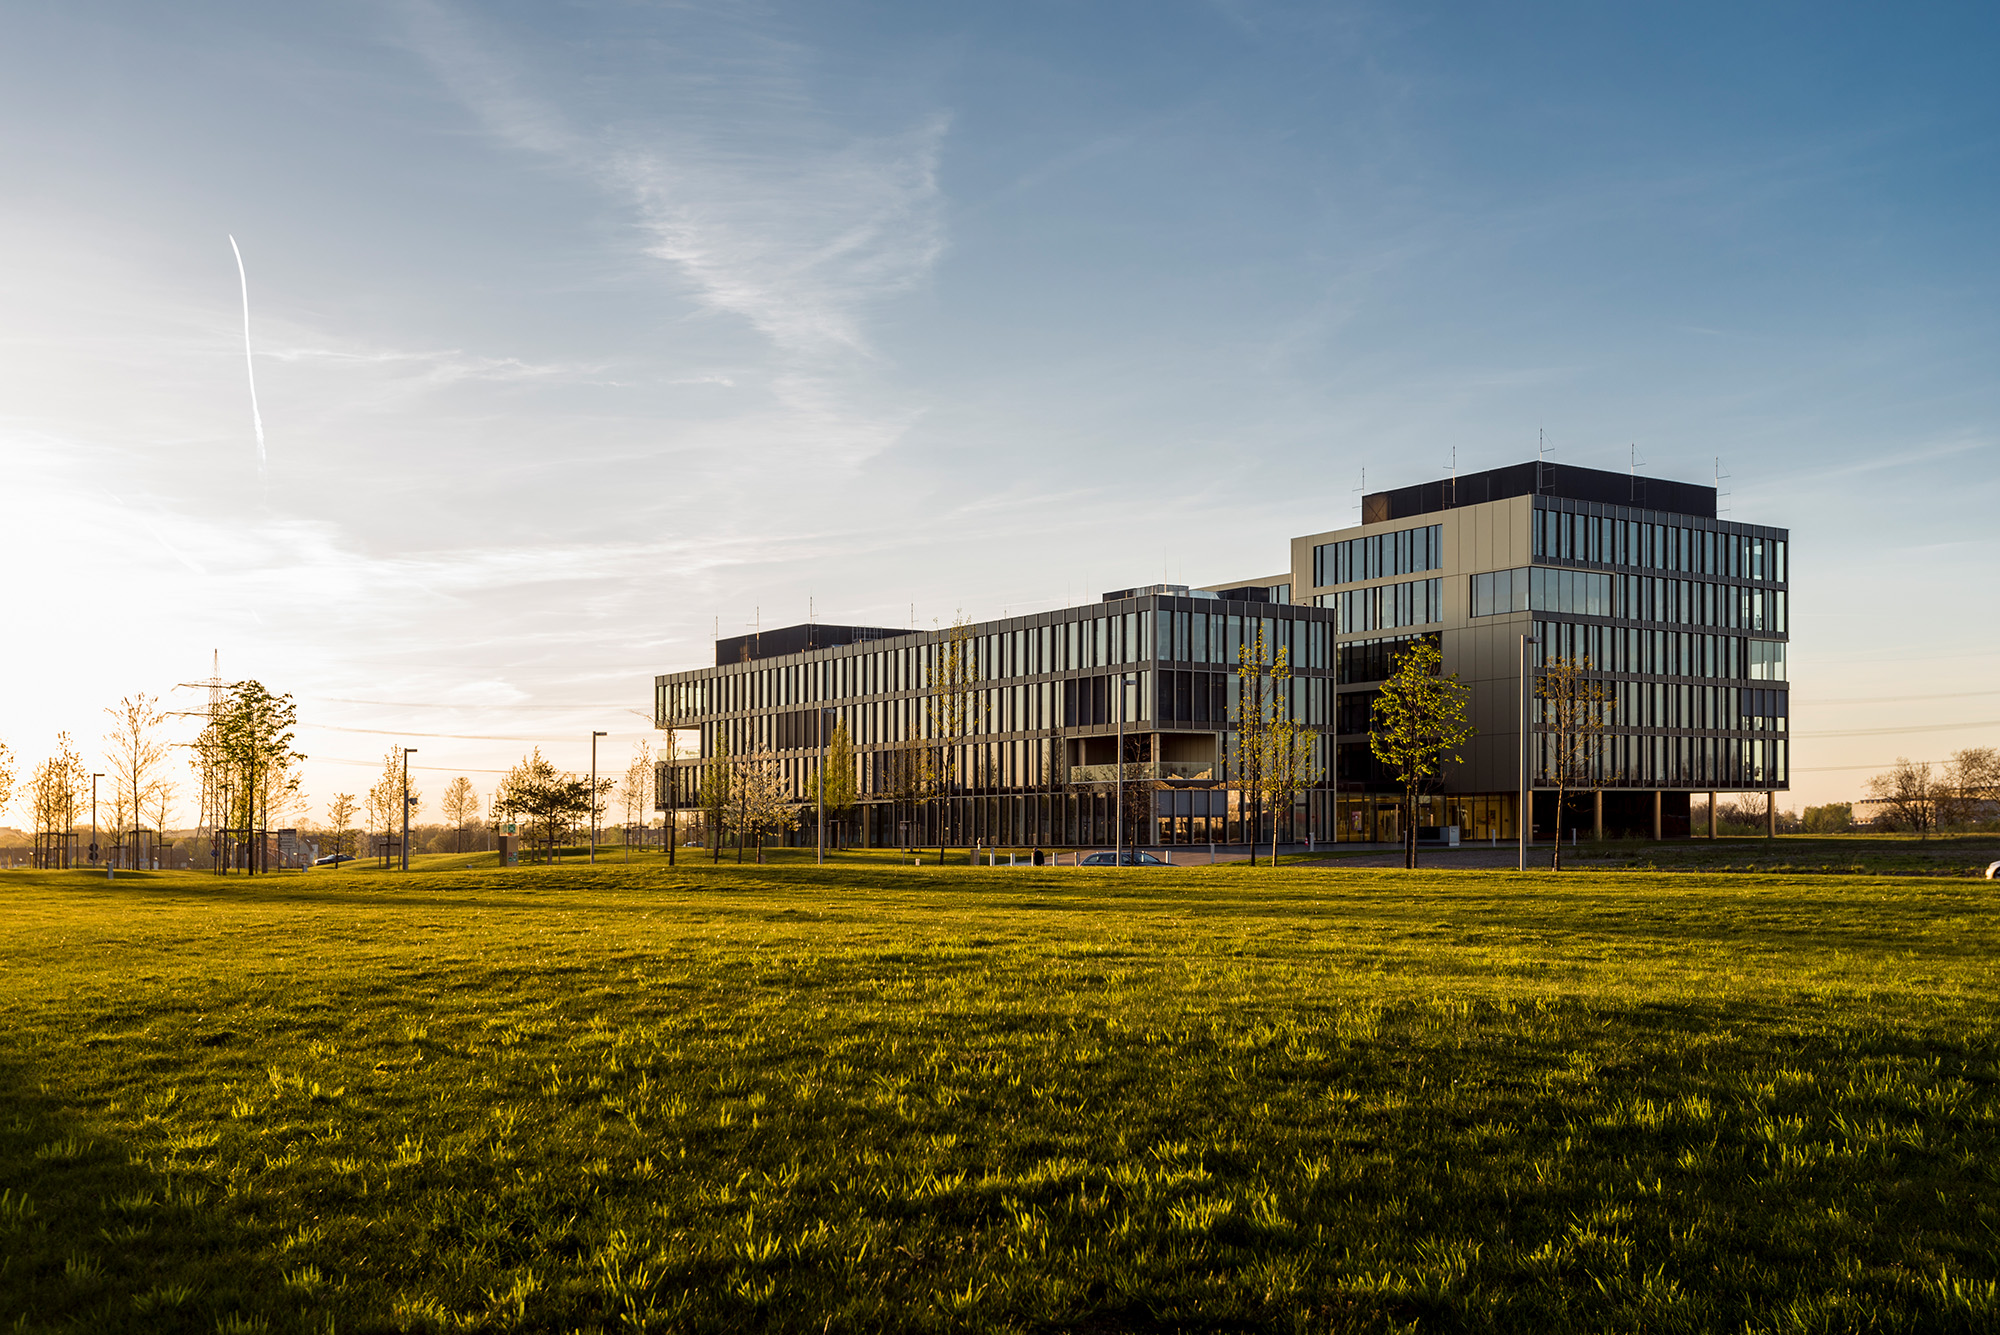 Der thyssenkrupp Campus in Essen mit seinen markanten, modernen Fronten und dem modernen Baustil eines zukunftsweisenden Offices. Im Vordergrund ist begrünte Fläche.